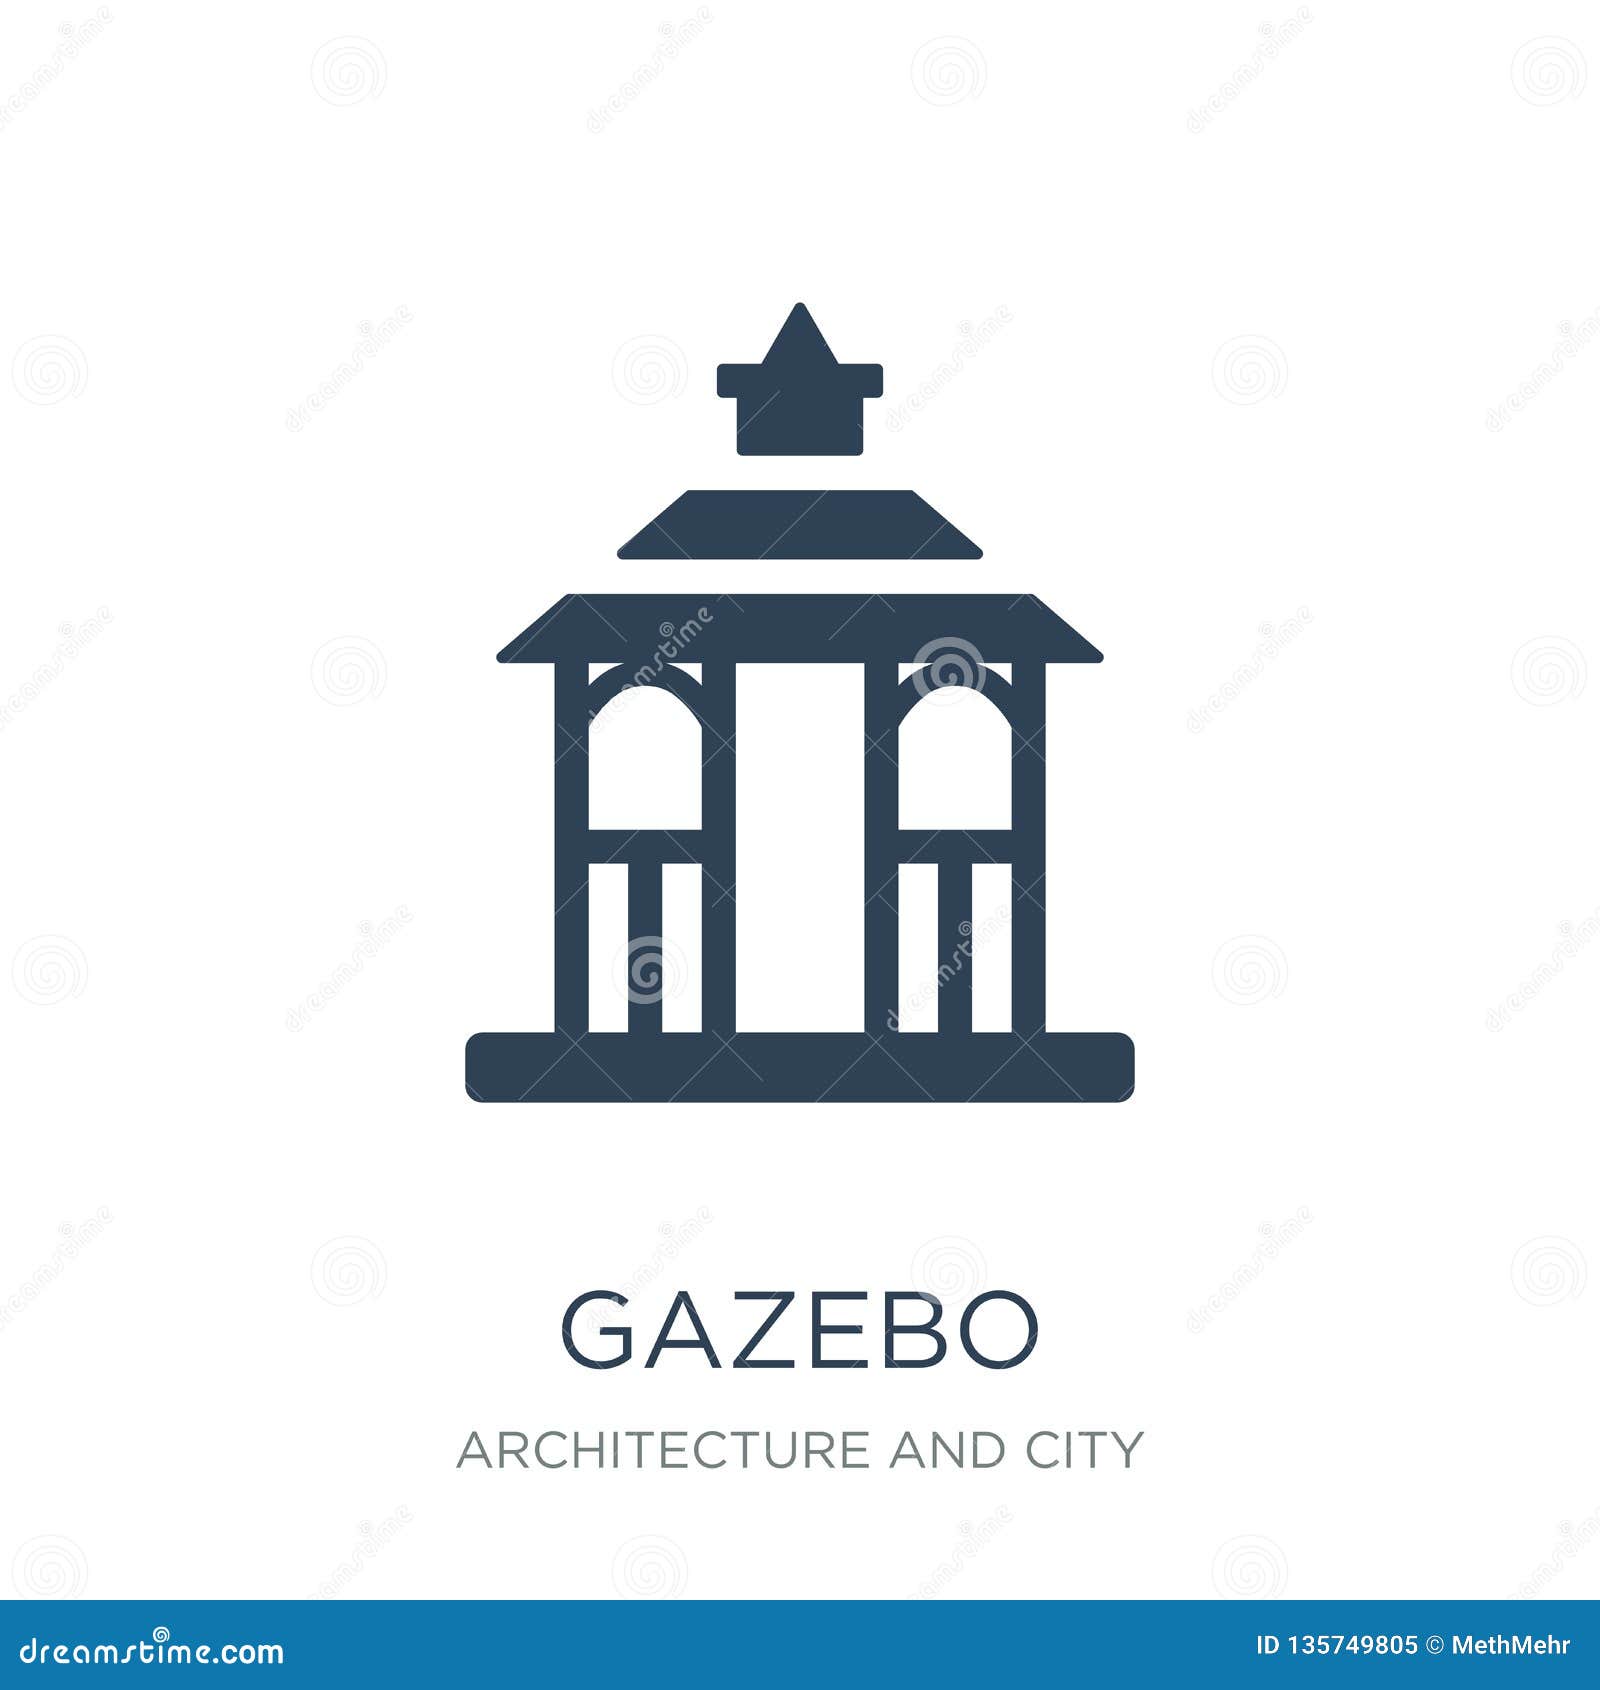 gazebo icon in trendy  style. gazebo icon  on white background. gazebo  icon simple and modern flat  for